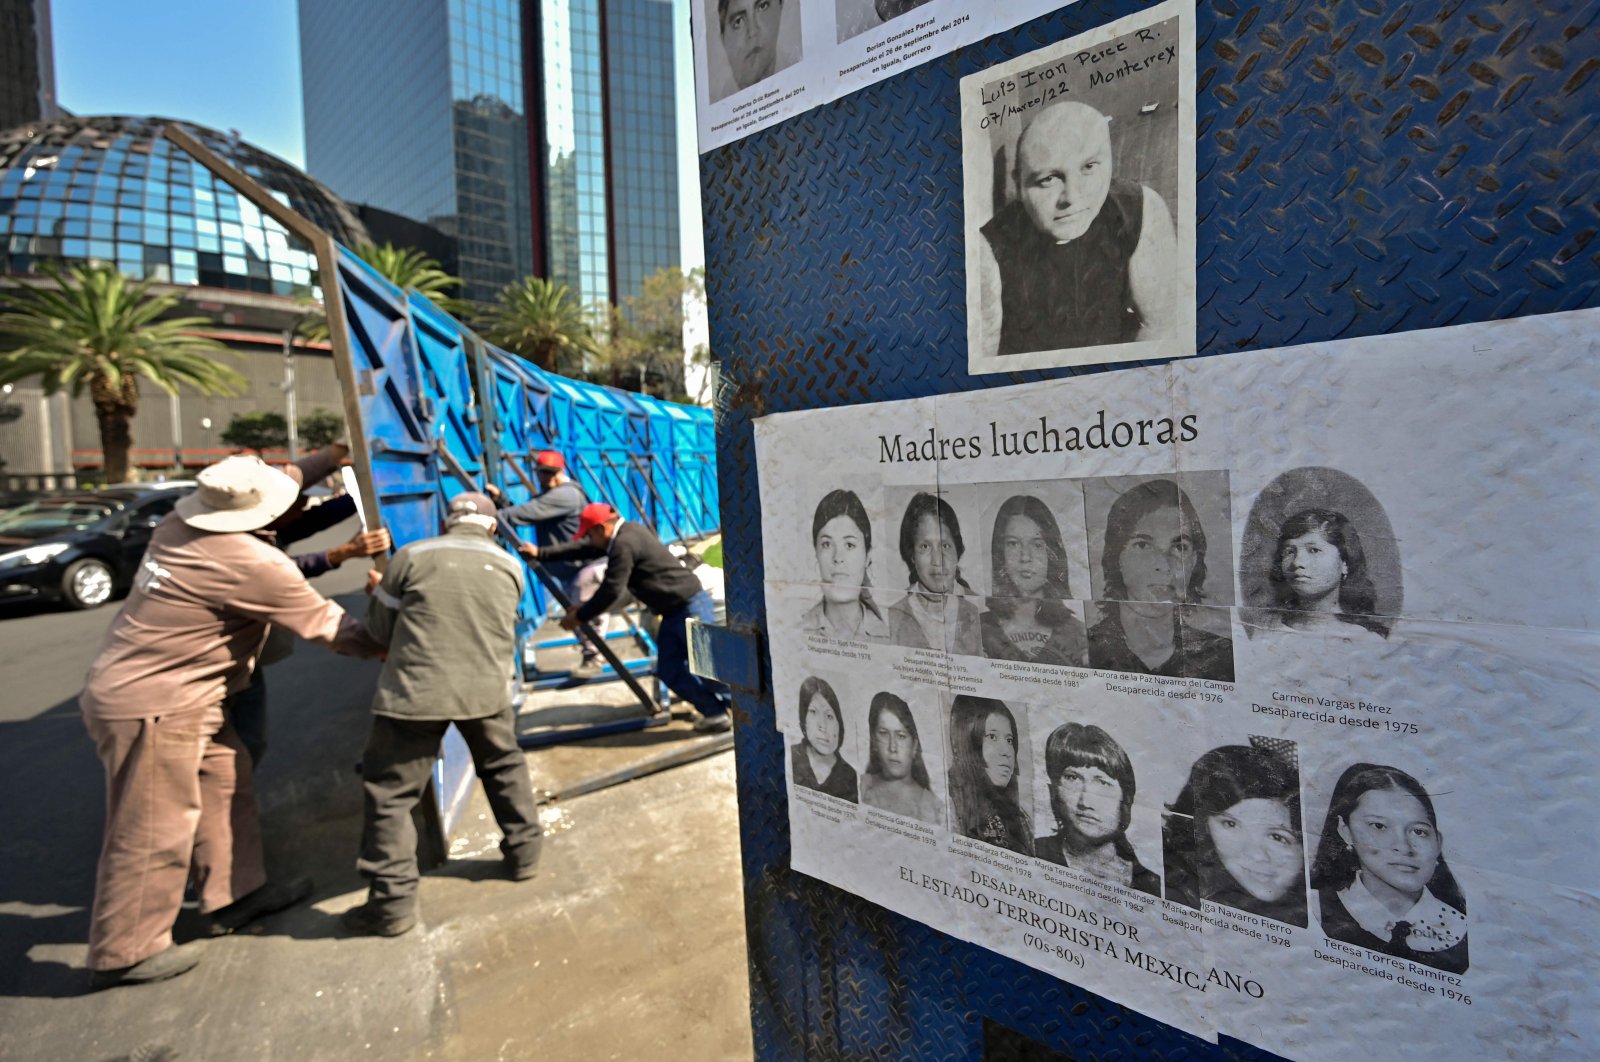 Setidaknya 100.000 terdaftar hilang di Meksiko saat orang hilang melonjak